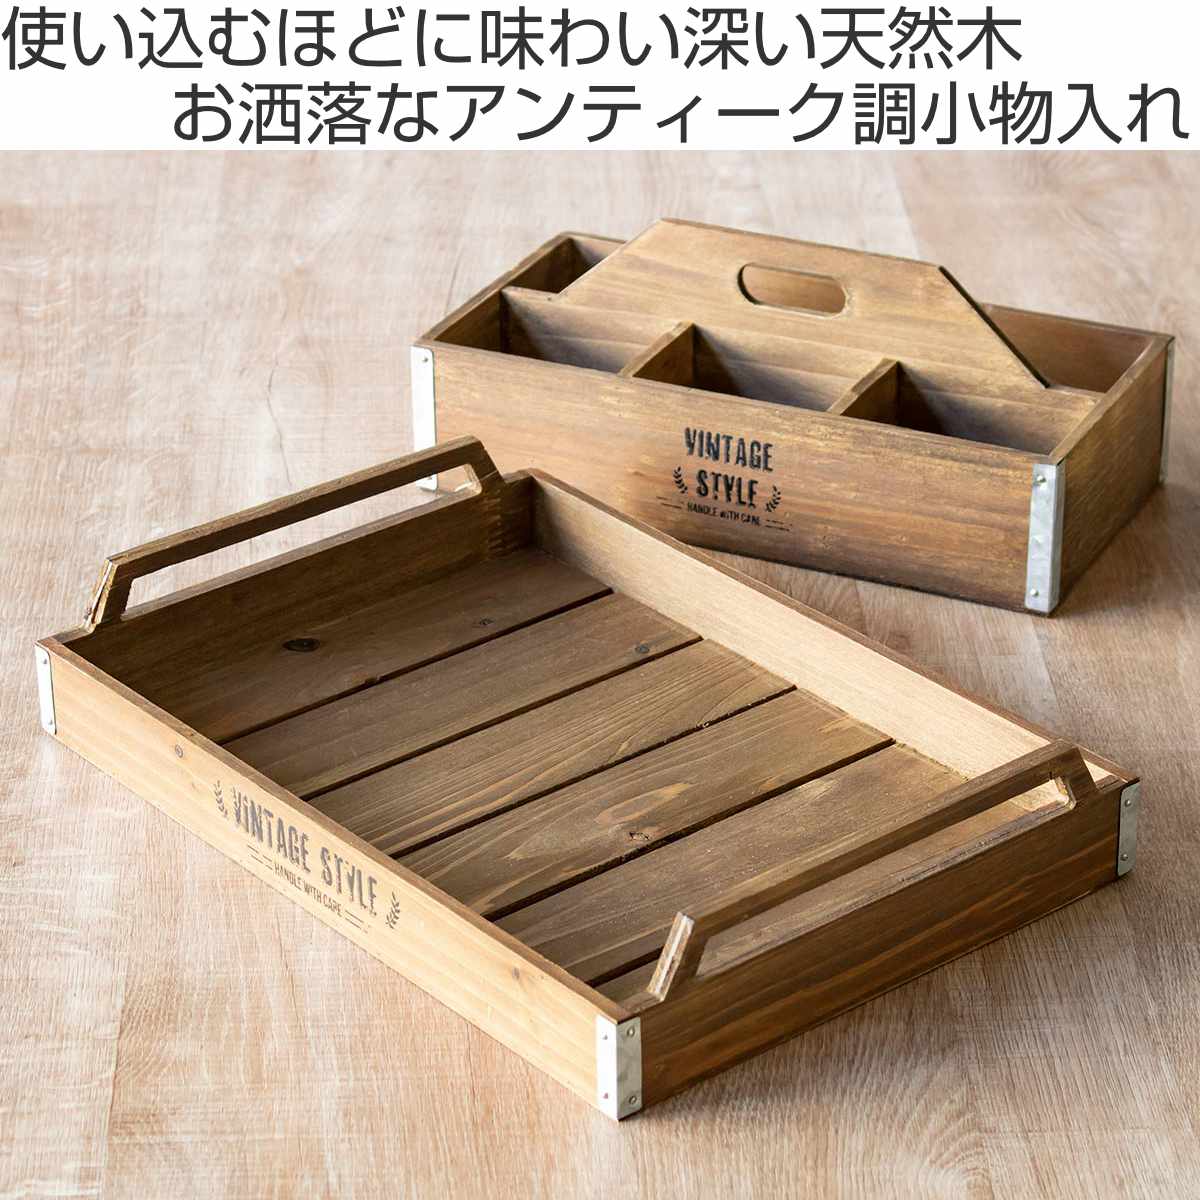 [ナチュラル]卓上収納ラック ケース 木製 ペン立て 小物収納ボックス